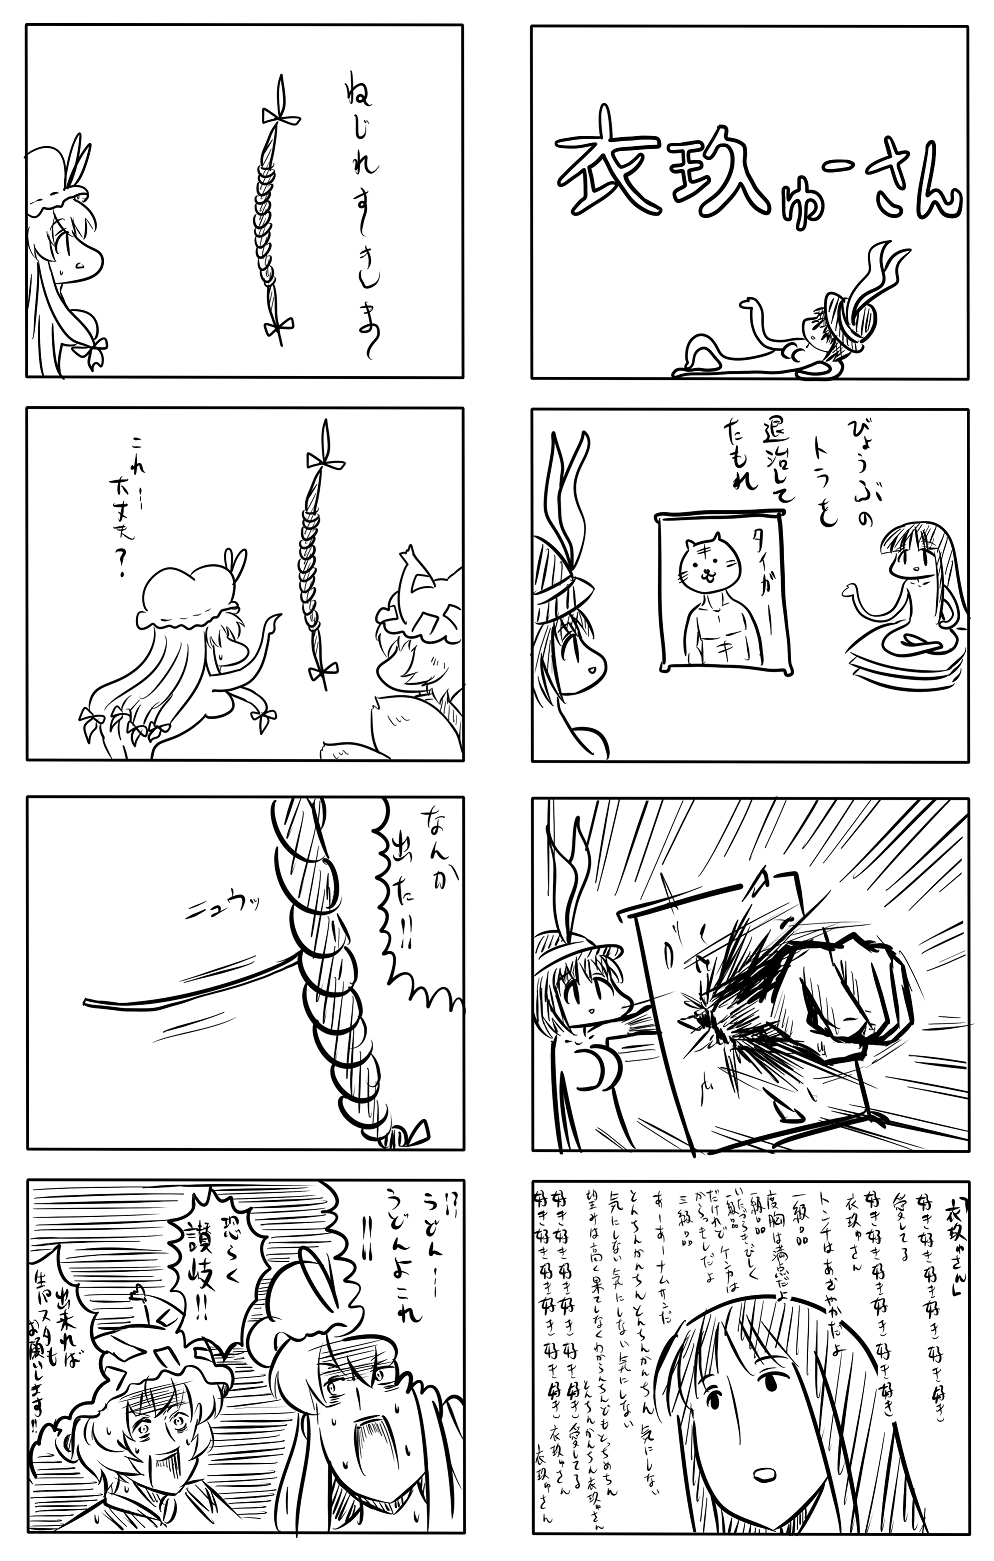 東方漫画407-稲庭タイガー